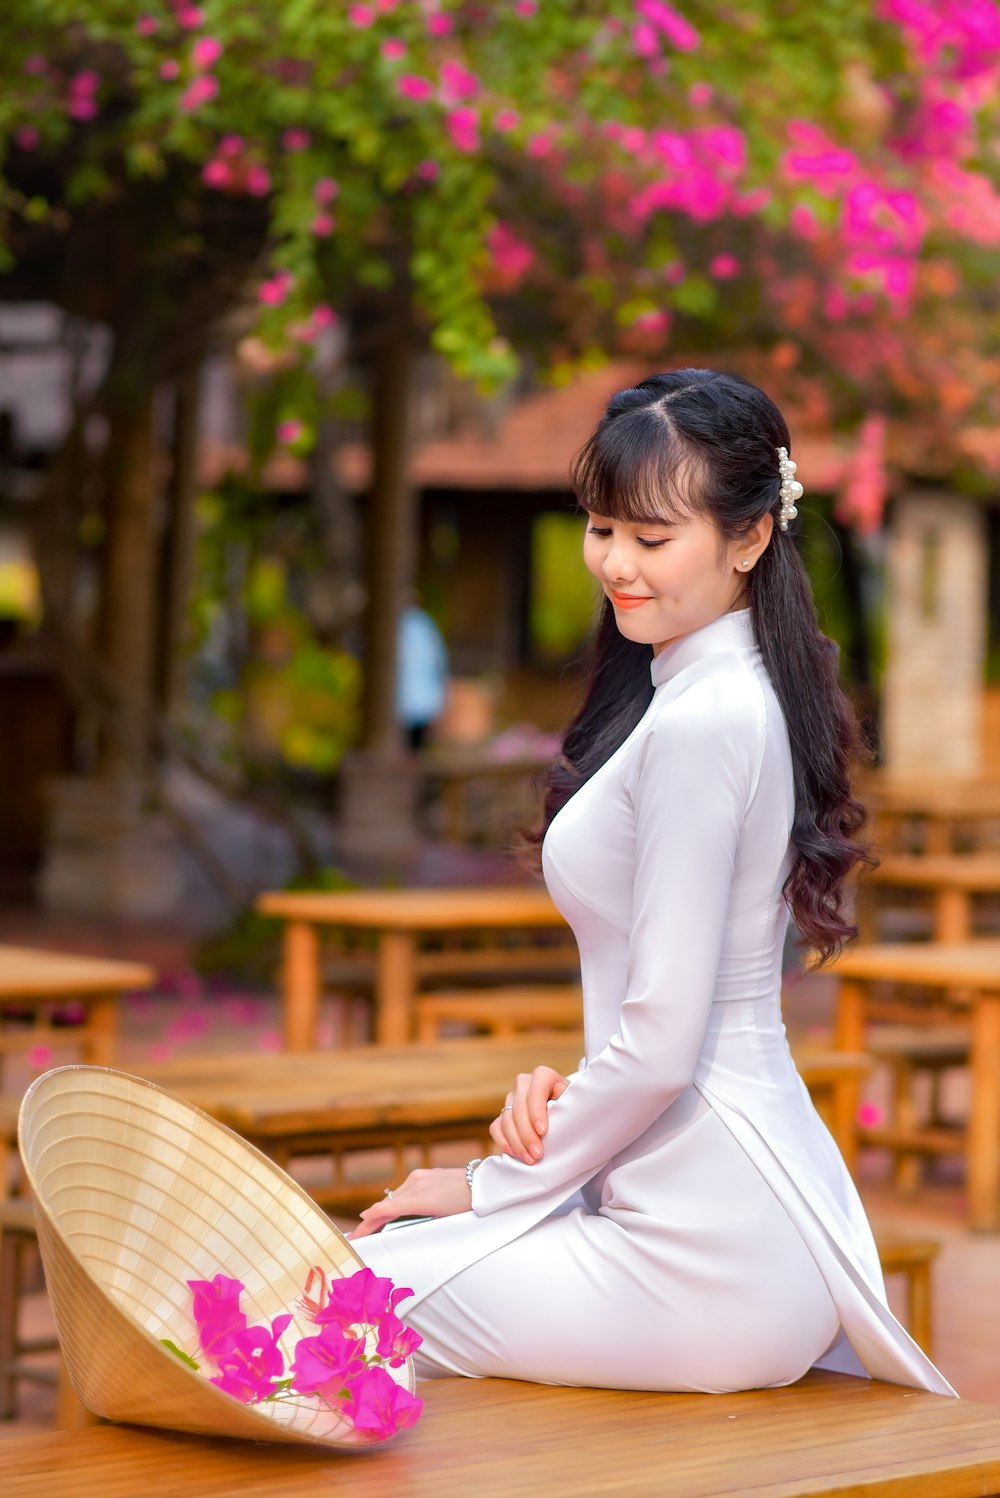 Mujer en vestido blanco de manga larga sentada en banco de madera marrón durante el día